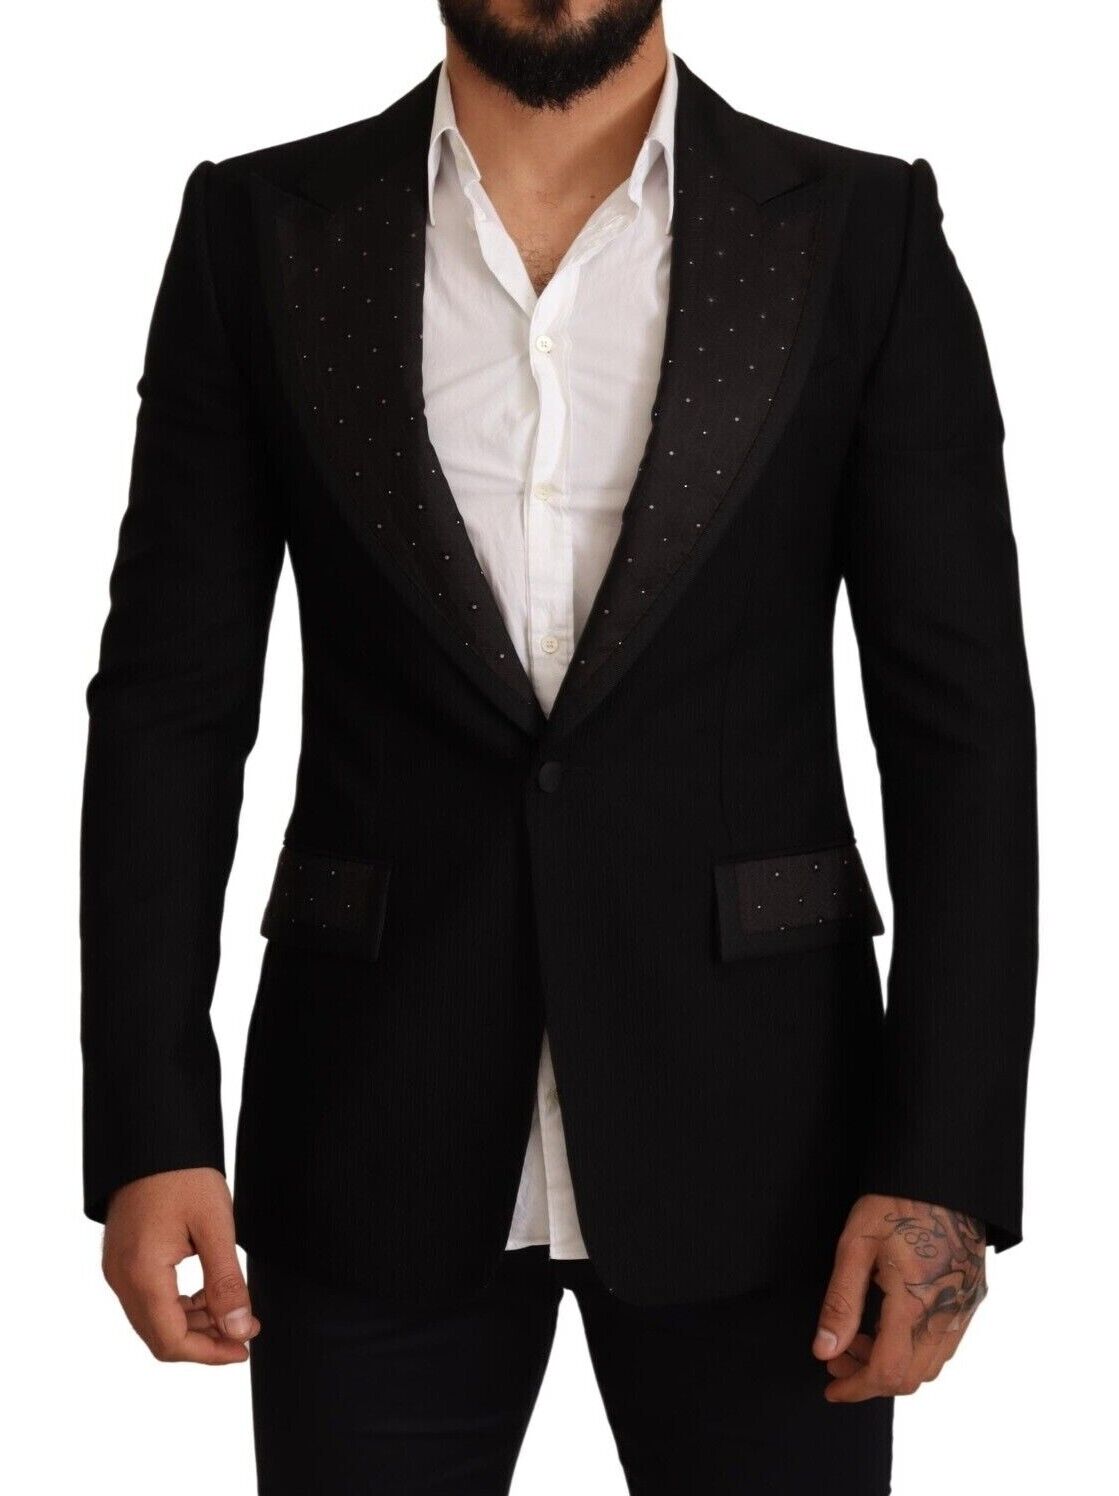 Куртка-блейзер DOLCE & GABBANA Черное шерстяное пальто приталенного кроя IT48 / US38 / M Рекомендуемая розничная цена 2400 долларов США